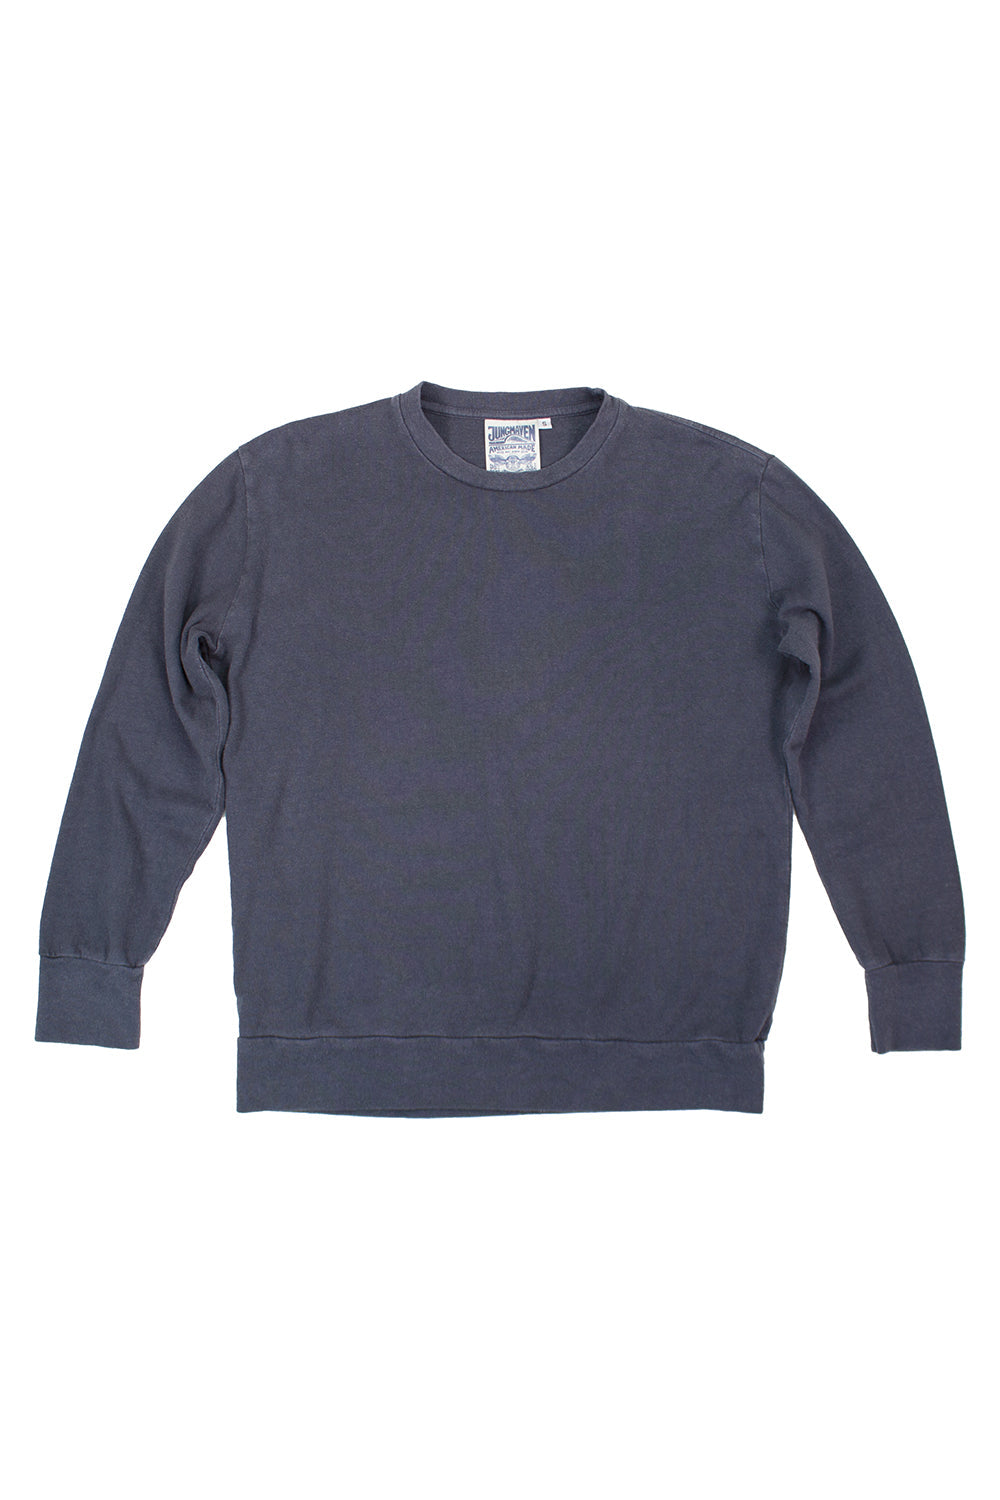 California Pullover - disel gray